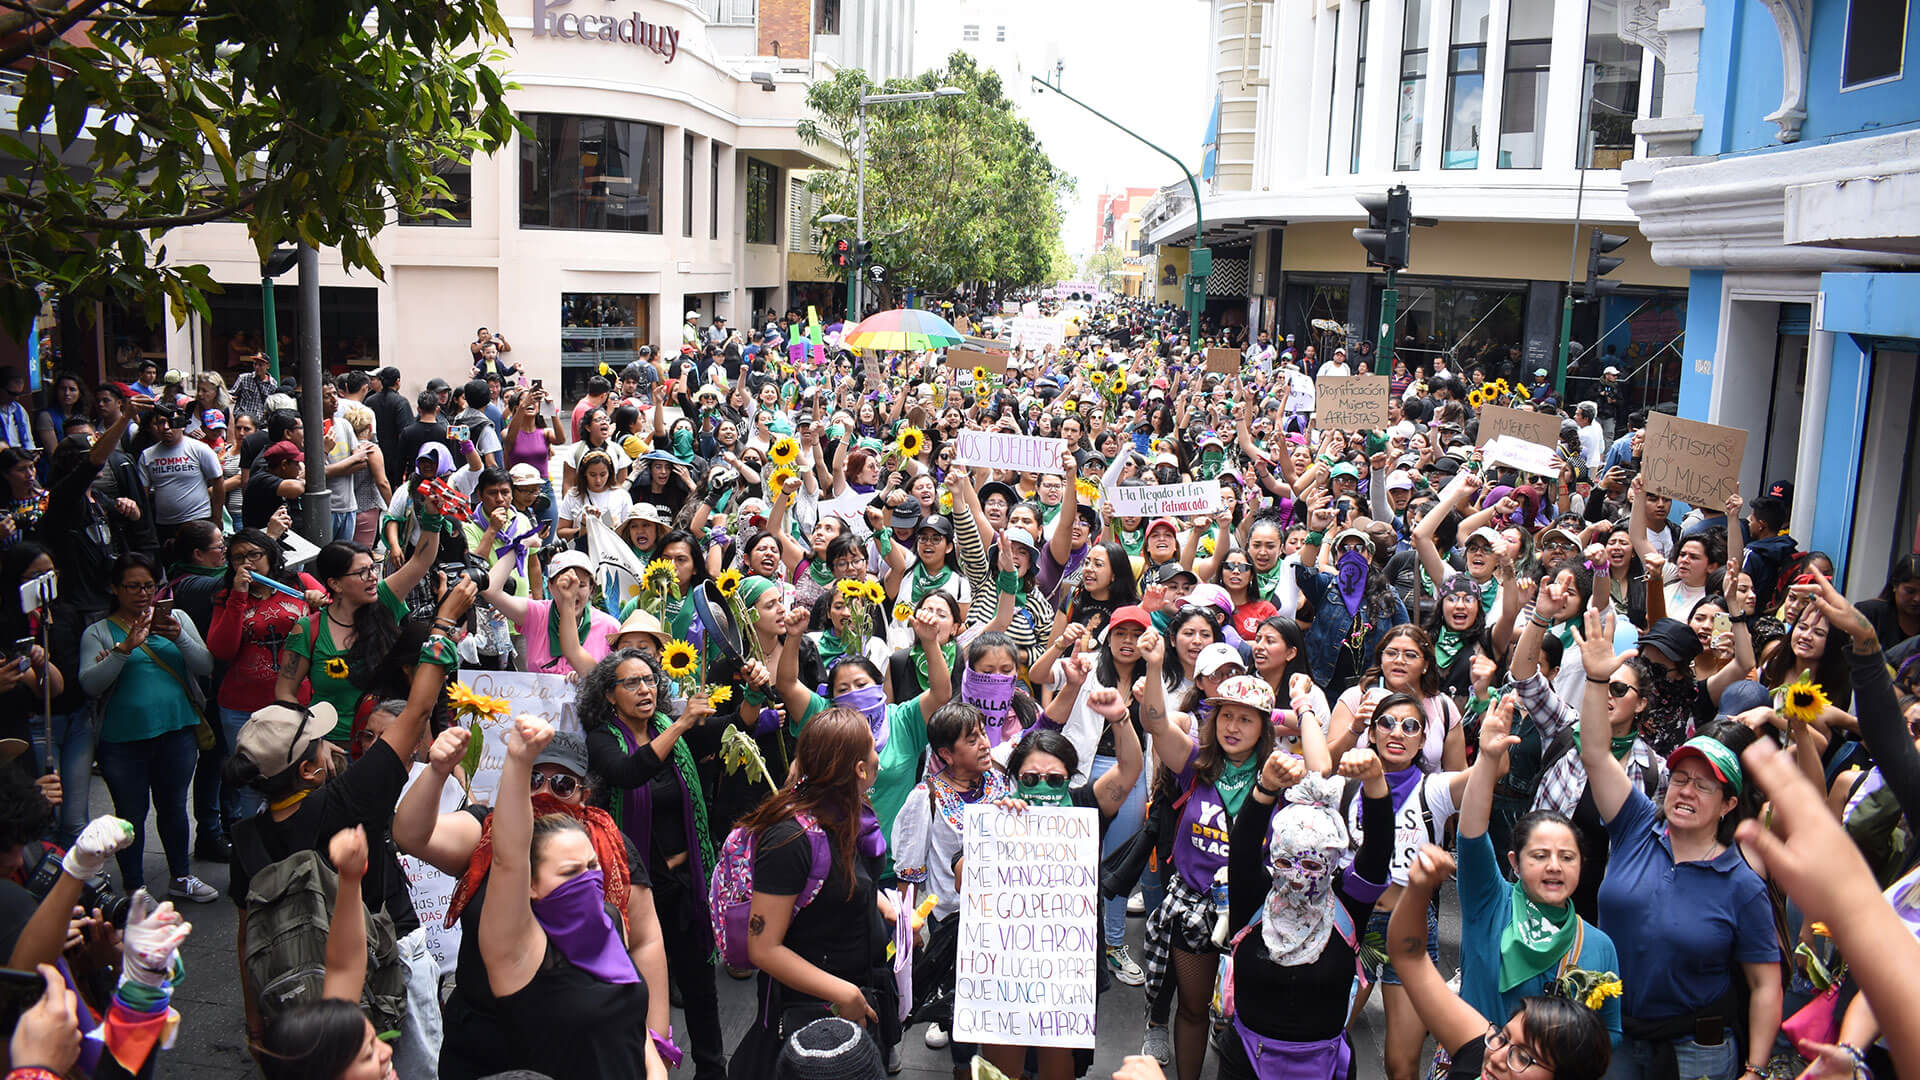 Demonstrierende mit hochgestreckten Fäusten, Schildern oder Sonnenblumen. Viele tragen die Farbe lila als Kleidung.